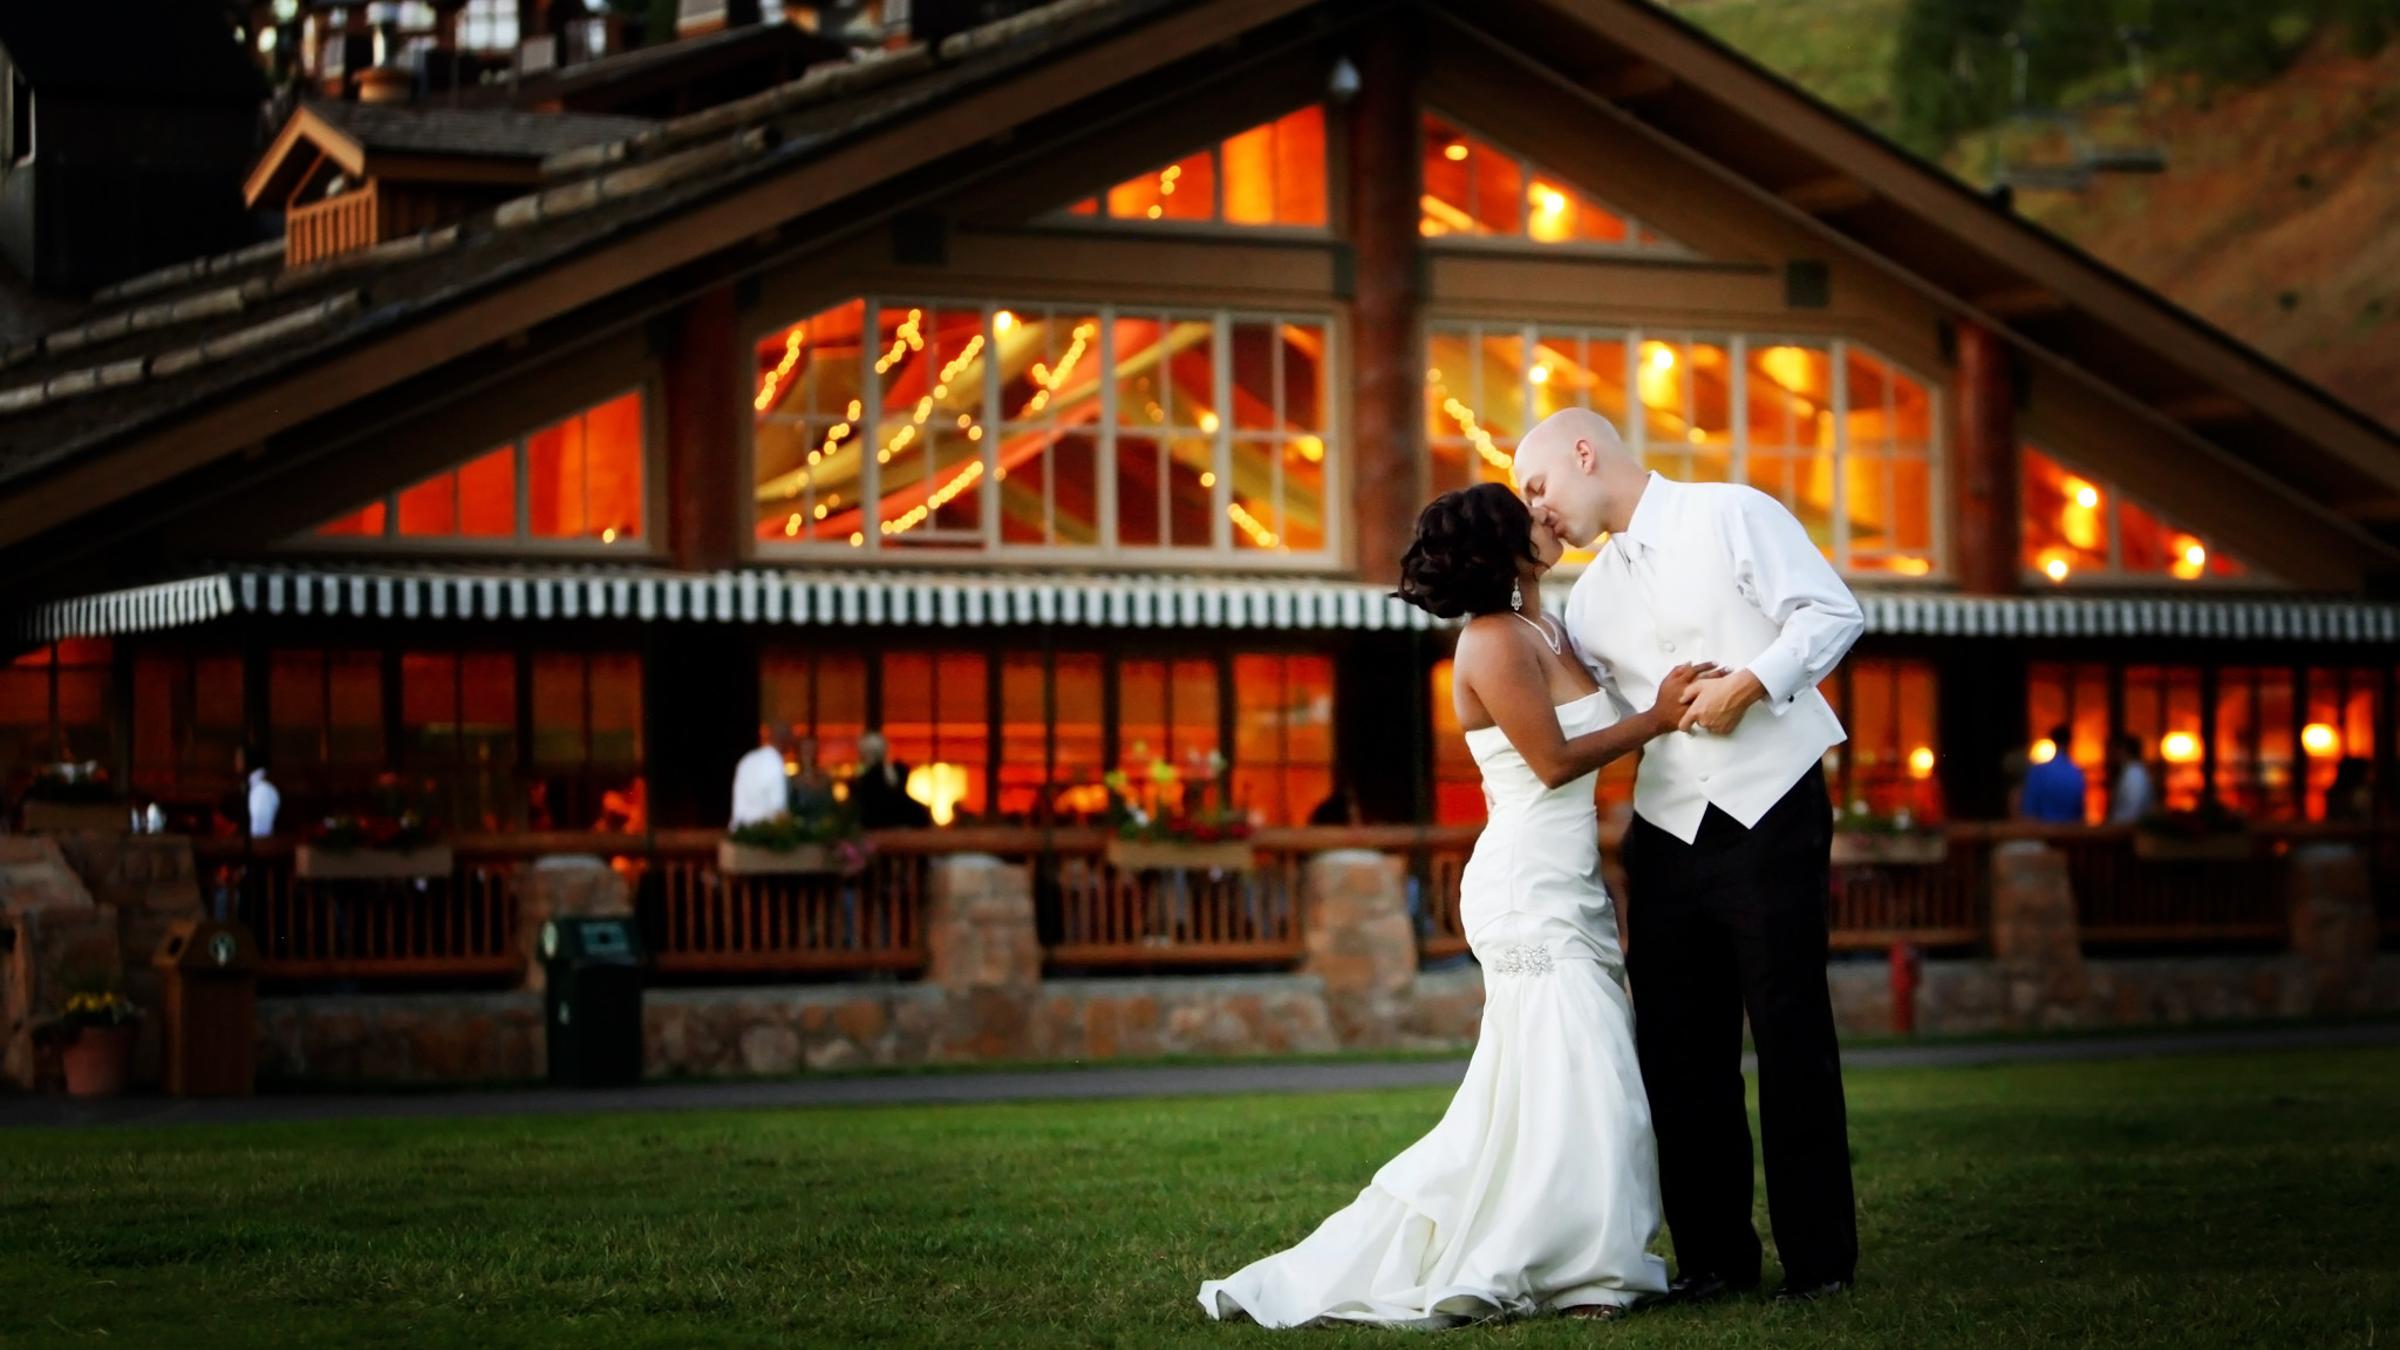 A bride and groom getting married at Deer Valley Resort